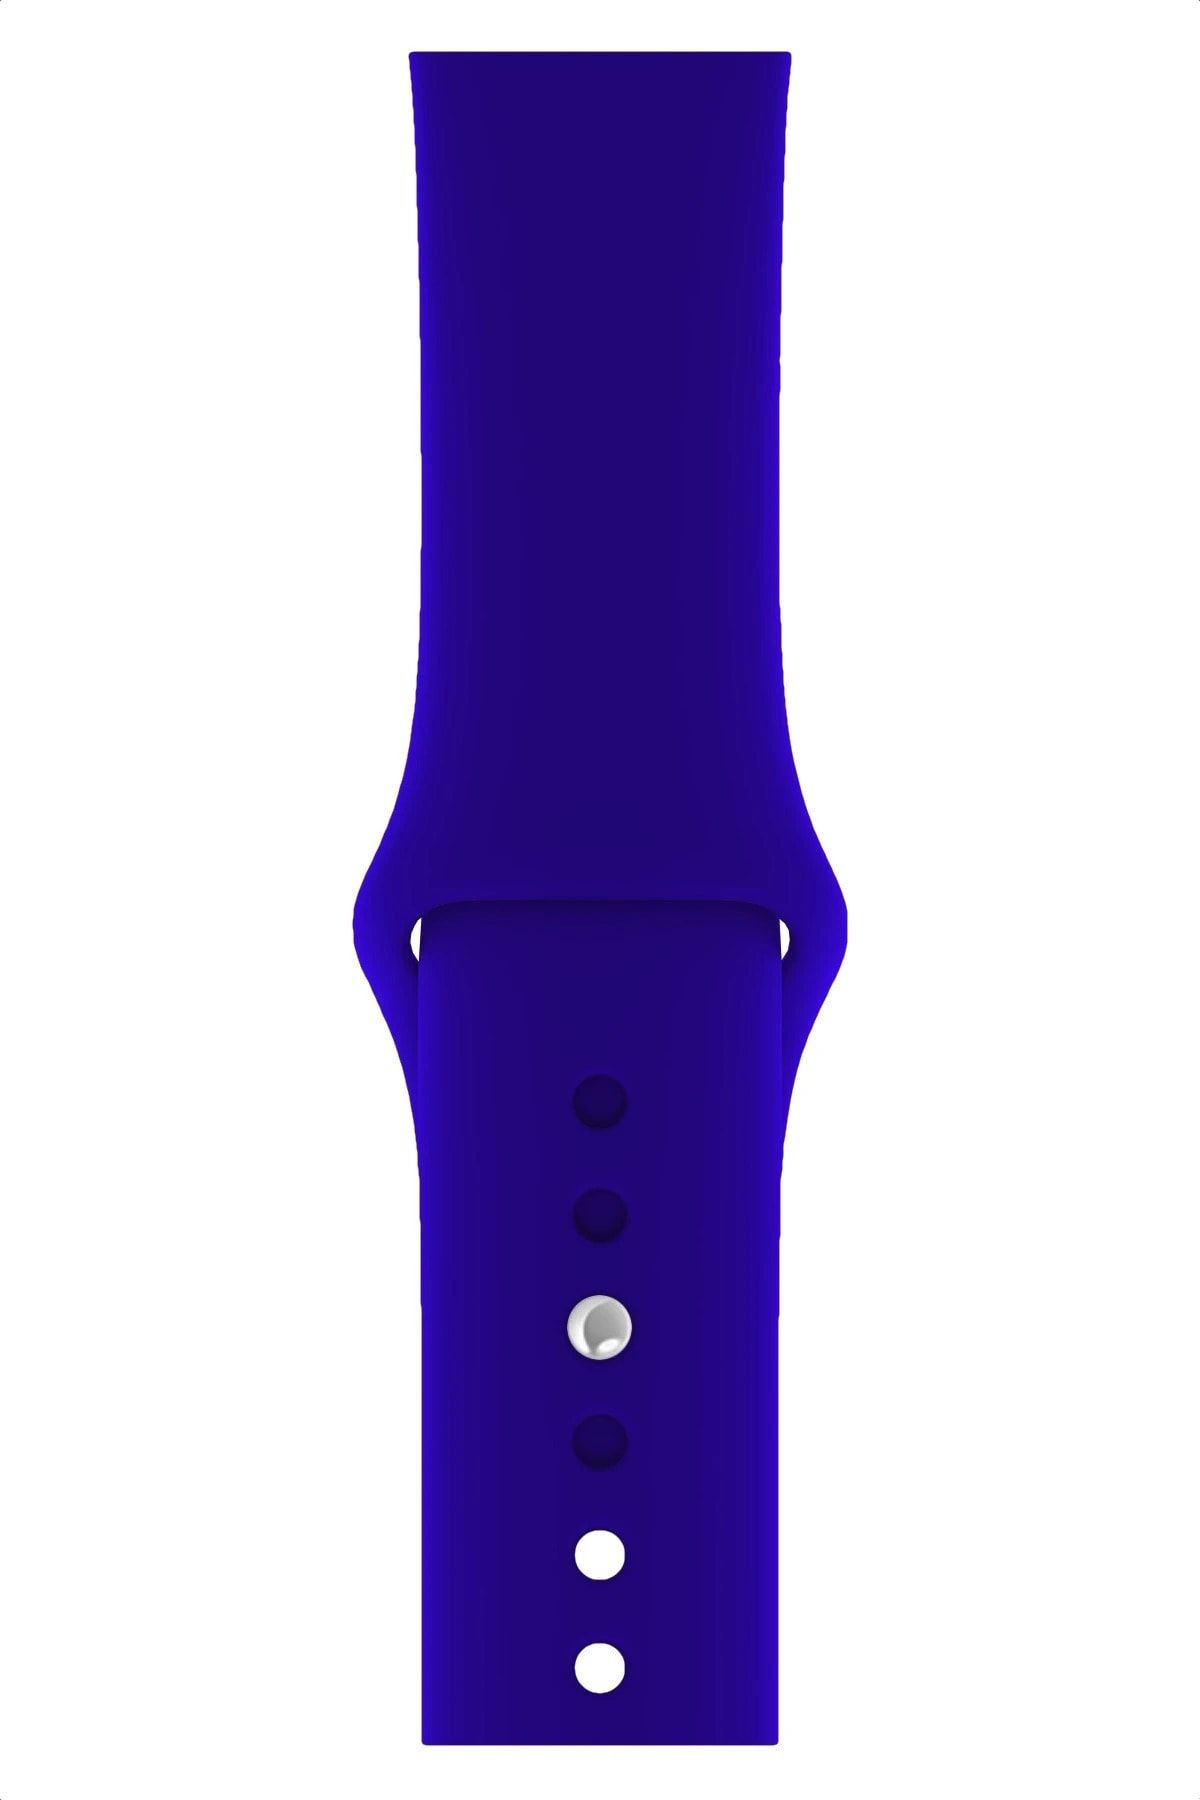 Fibaks Apple Watch 42mm A+ Yüksek Kalite Spor Klasik Silikon Kordon Kayış Bileklik